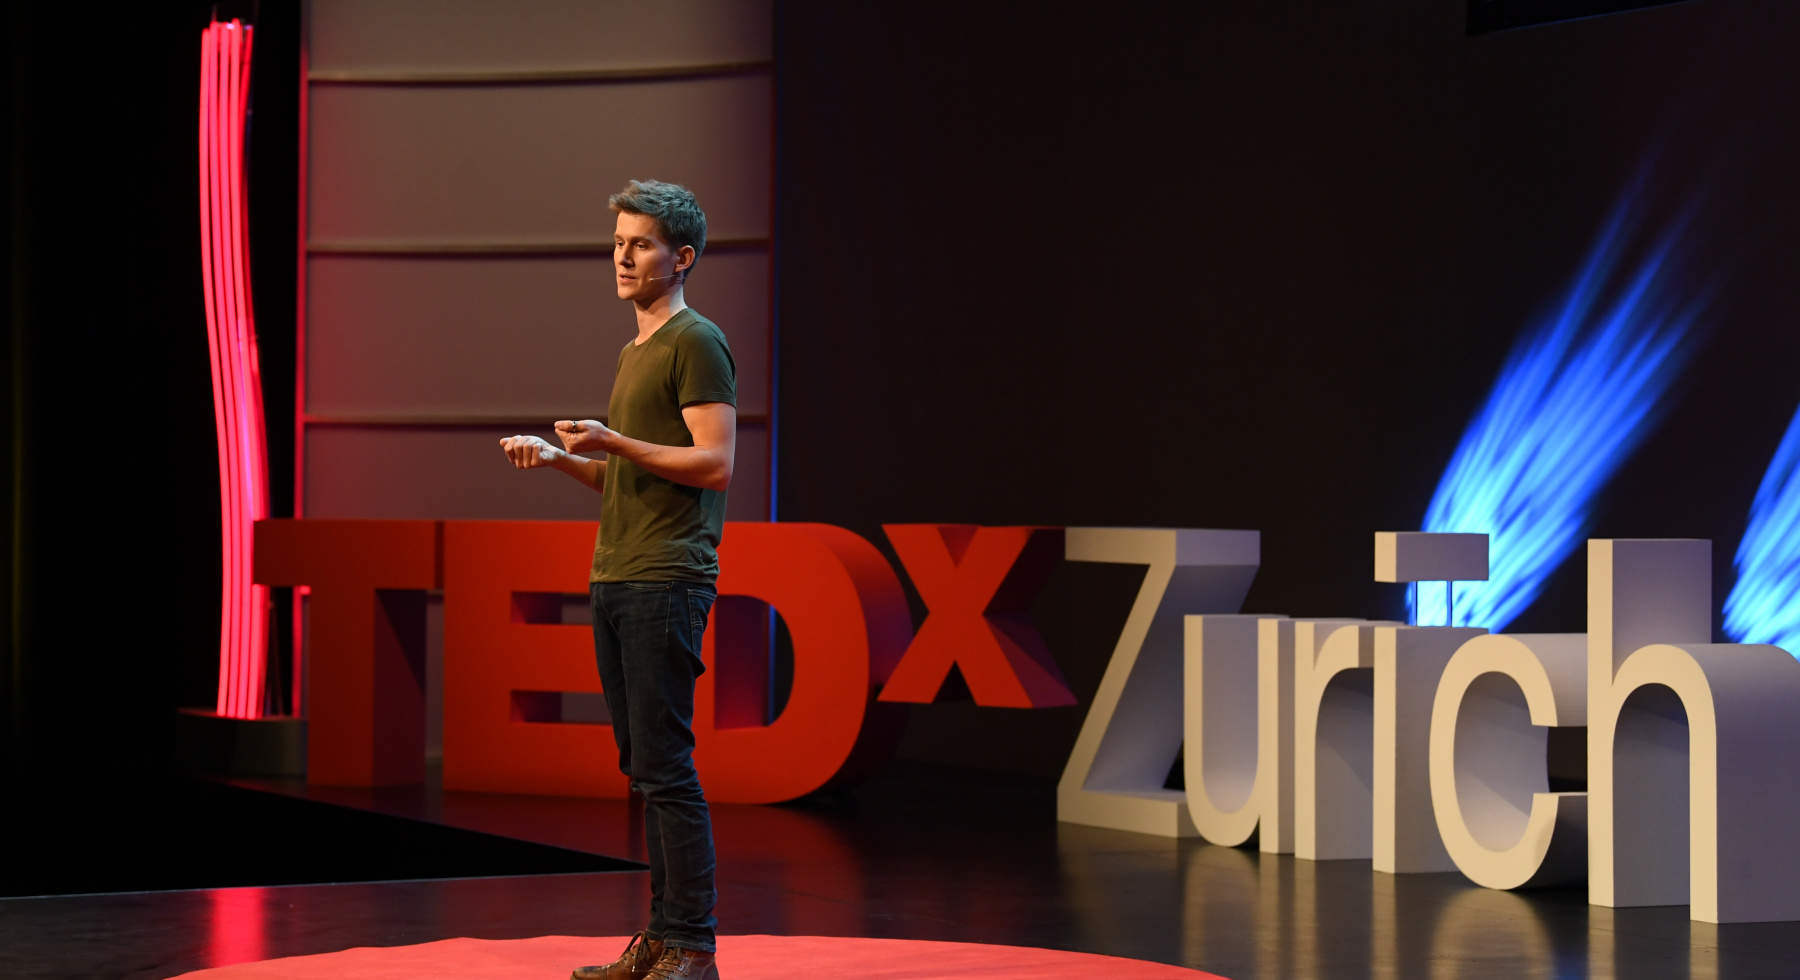 Christian Hirsig (Powercoders.org) auf der Bühne von TEDx Zürich